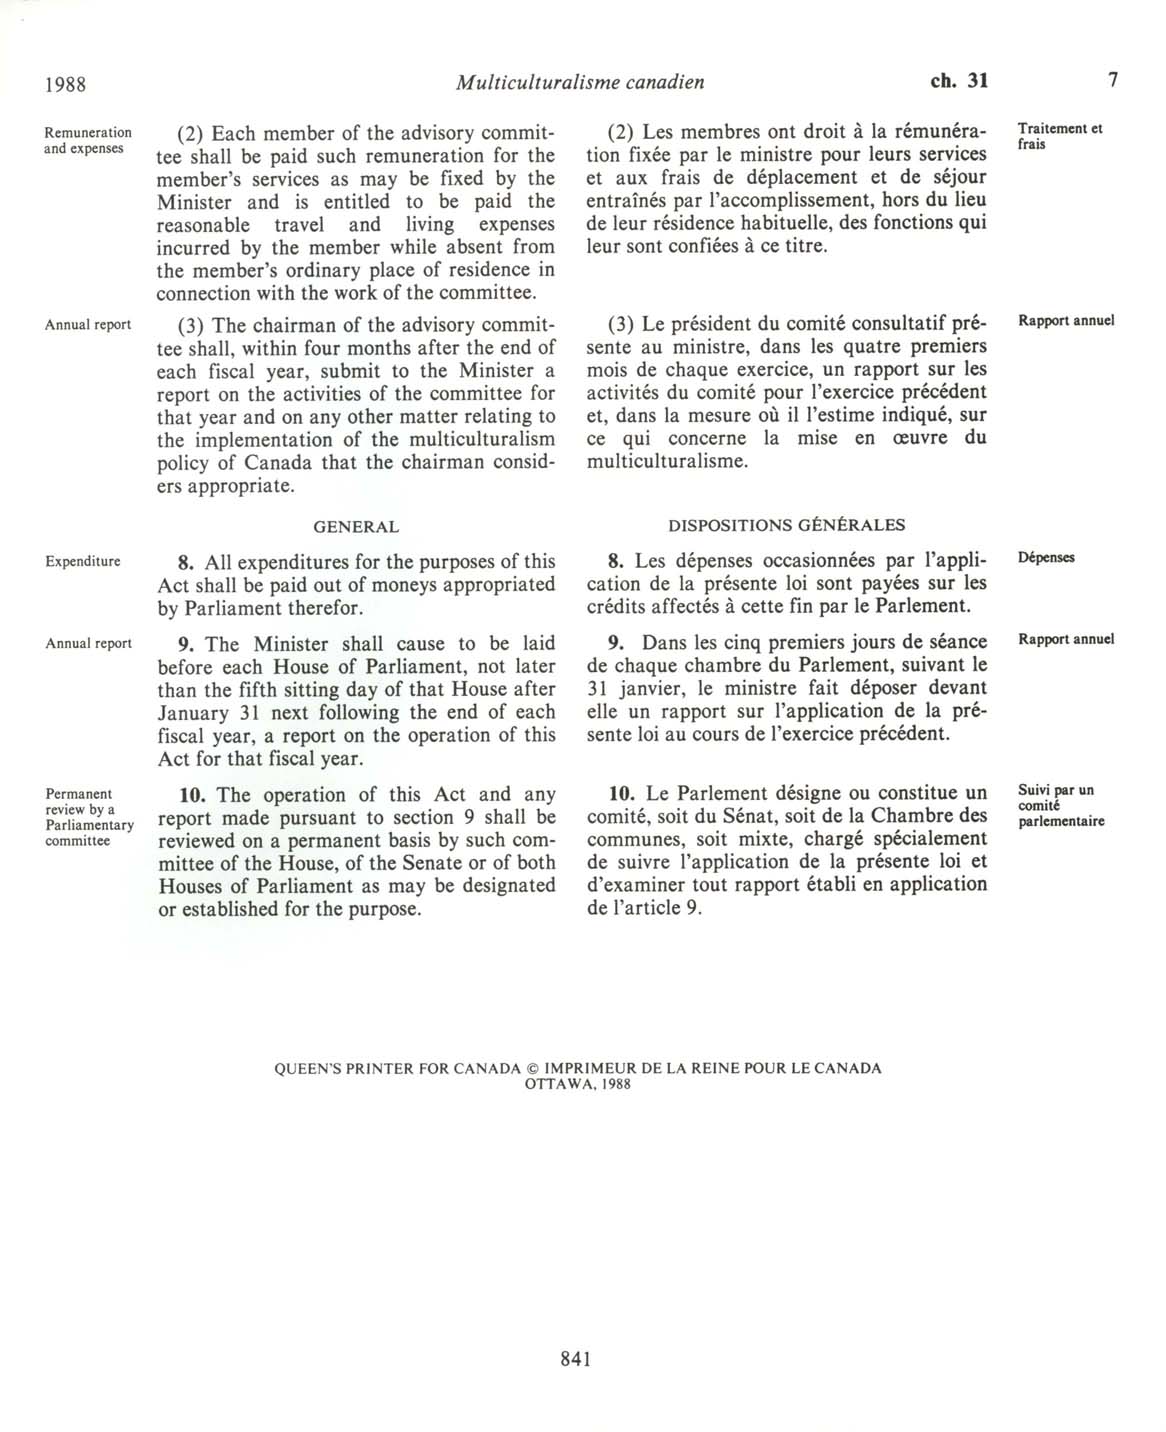 Page 841 Loi sur le multiculturalisme canadien, 1988